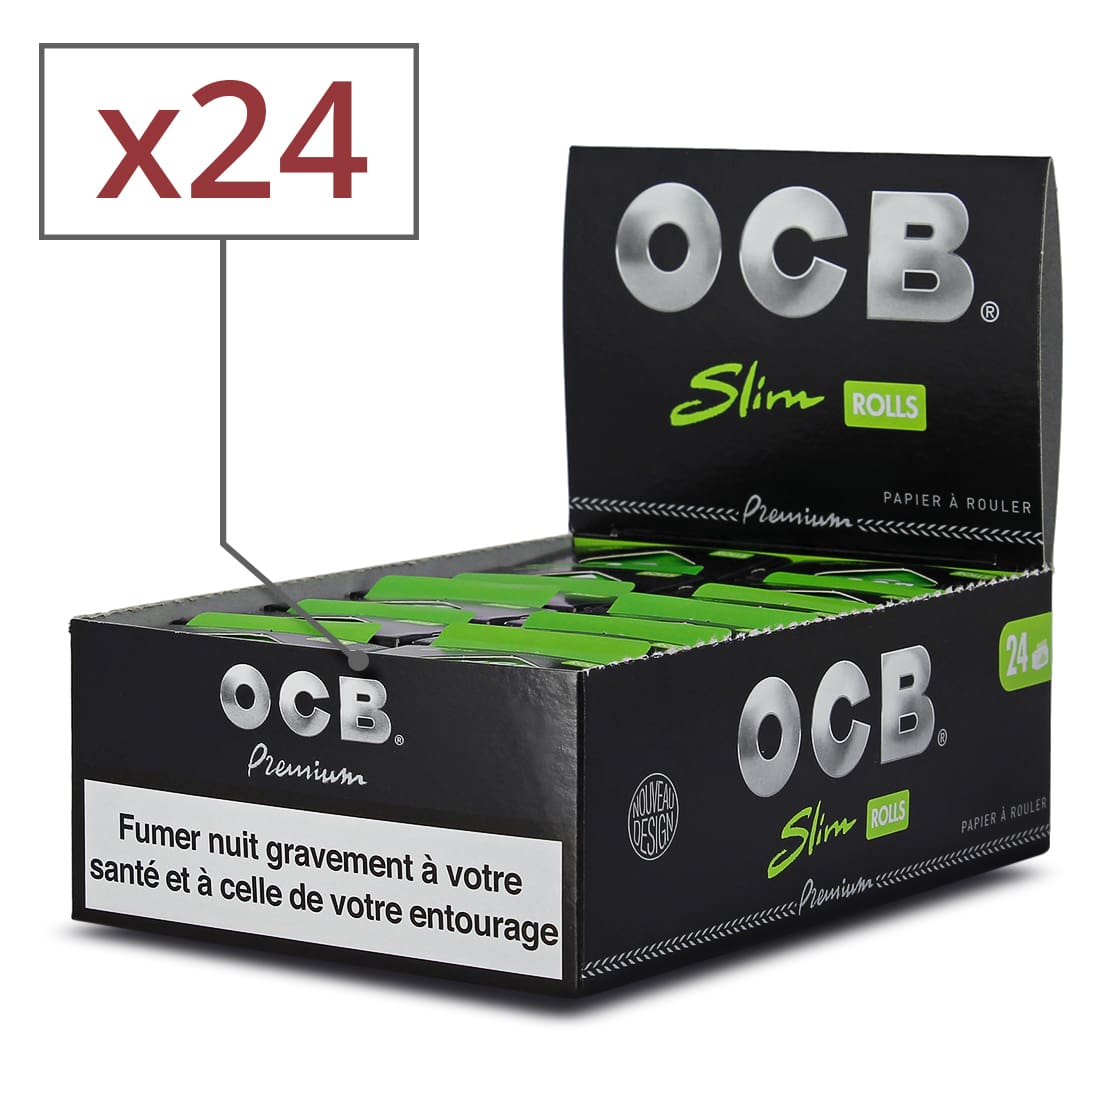 OCB Slim ROLLS Premium lots de 1 à 400 carnets de feuille à rouler grande taille 